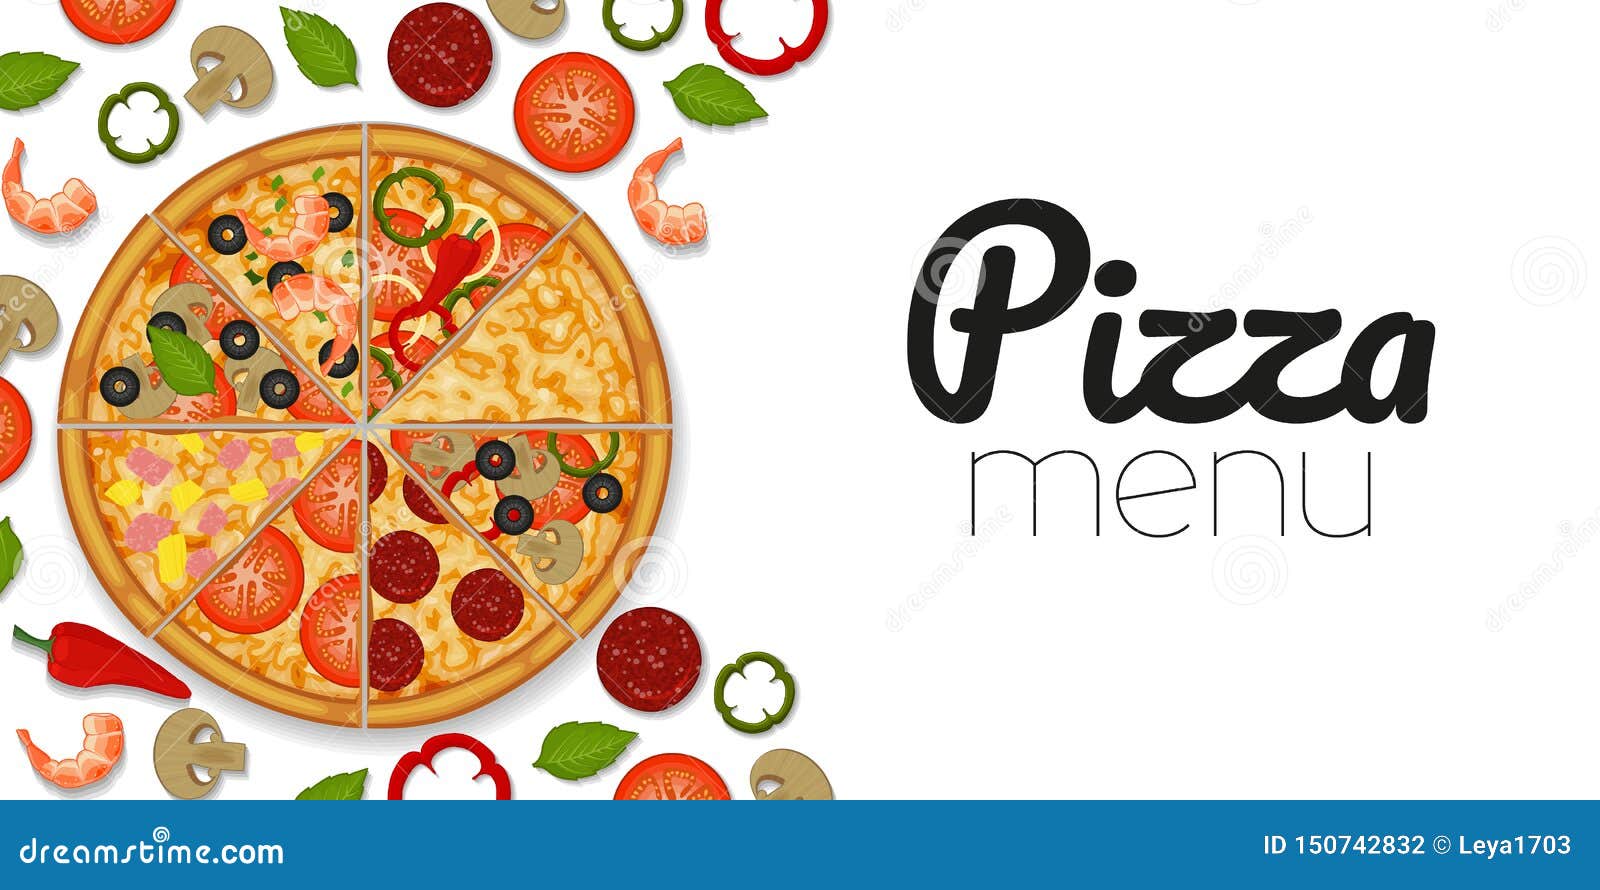 Chọn nguyên liệu pizza tốt nhất để có món pizza hoàn hảo. Tùy chọn đa dạng, tươi ngon và giàu dinh dưỡng, được chế biến và cắt tỉa chu đáo. Hãy sáng tạo và cho ra đời một món pizza có phong cách riêng của bạn. 